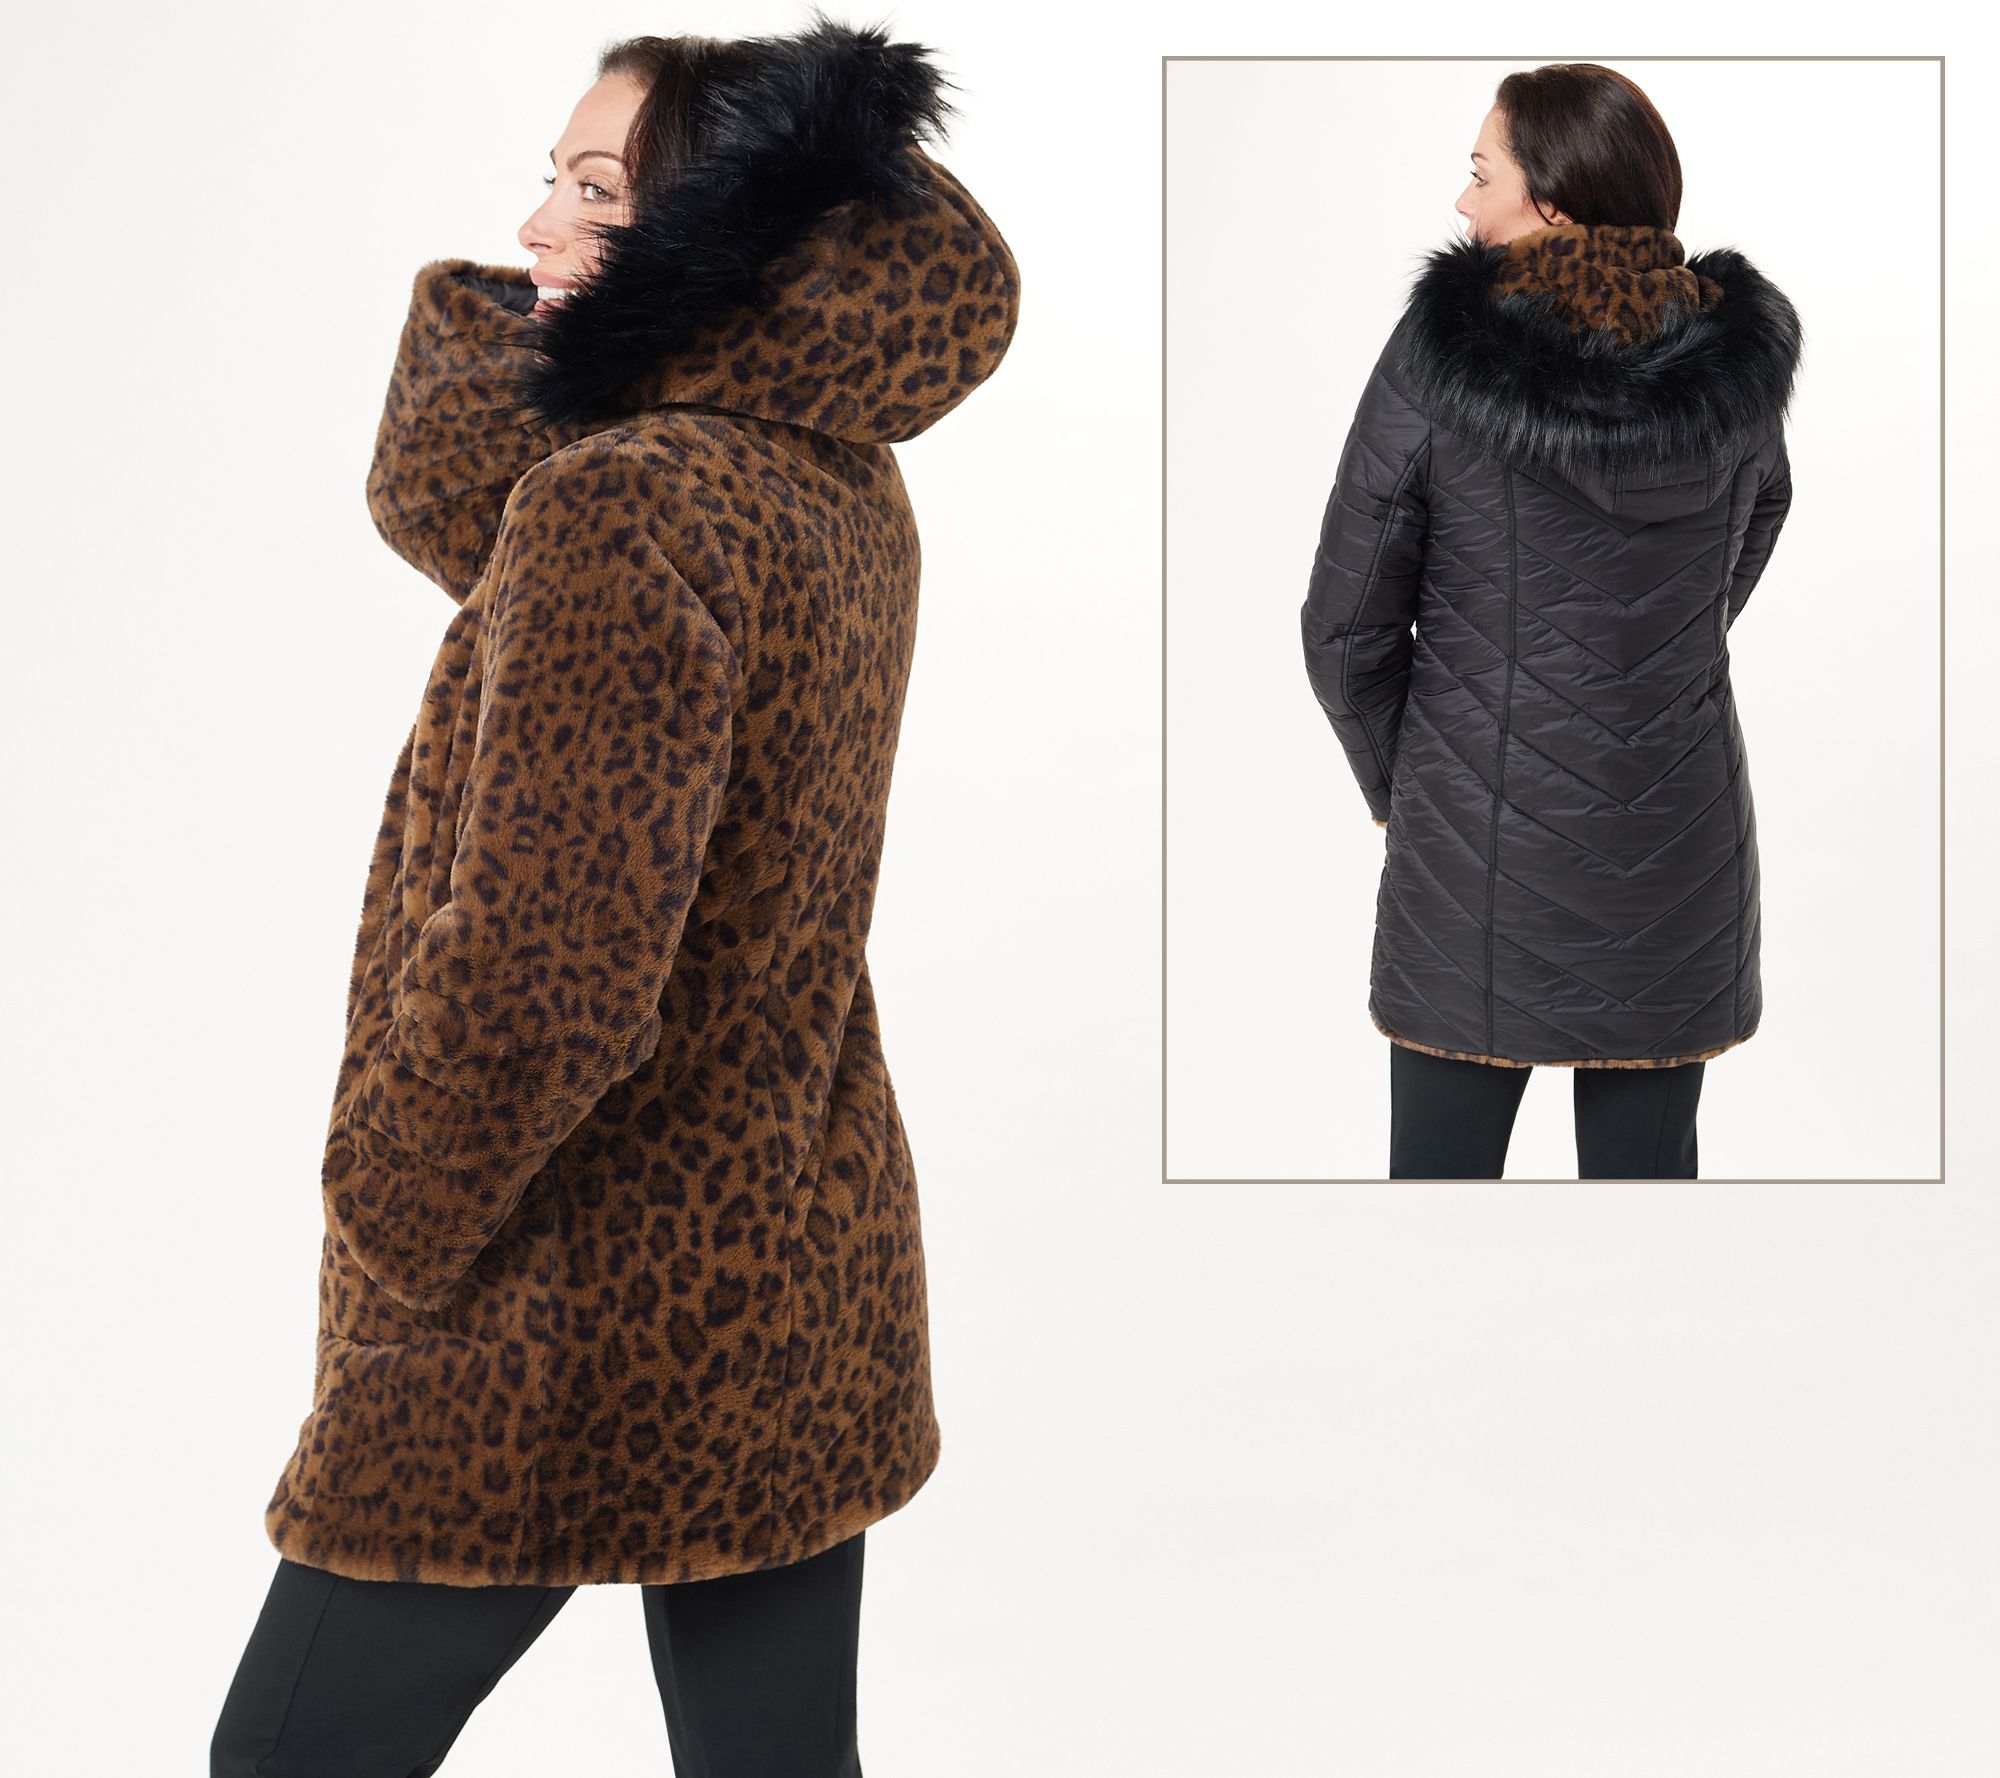 Lucky Brand rain jacket windbreaker water resistant hooded leopard